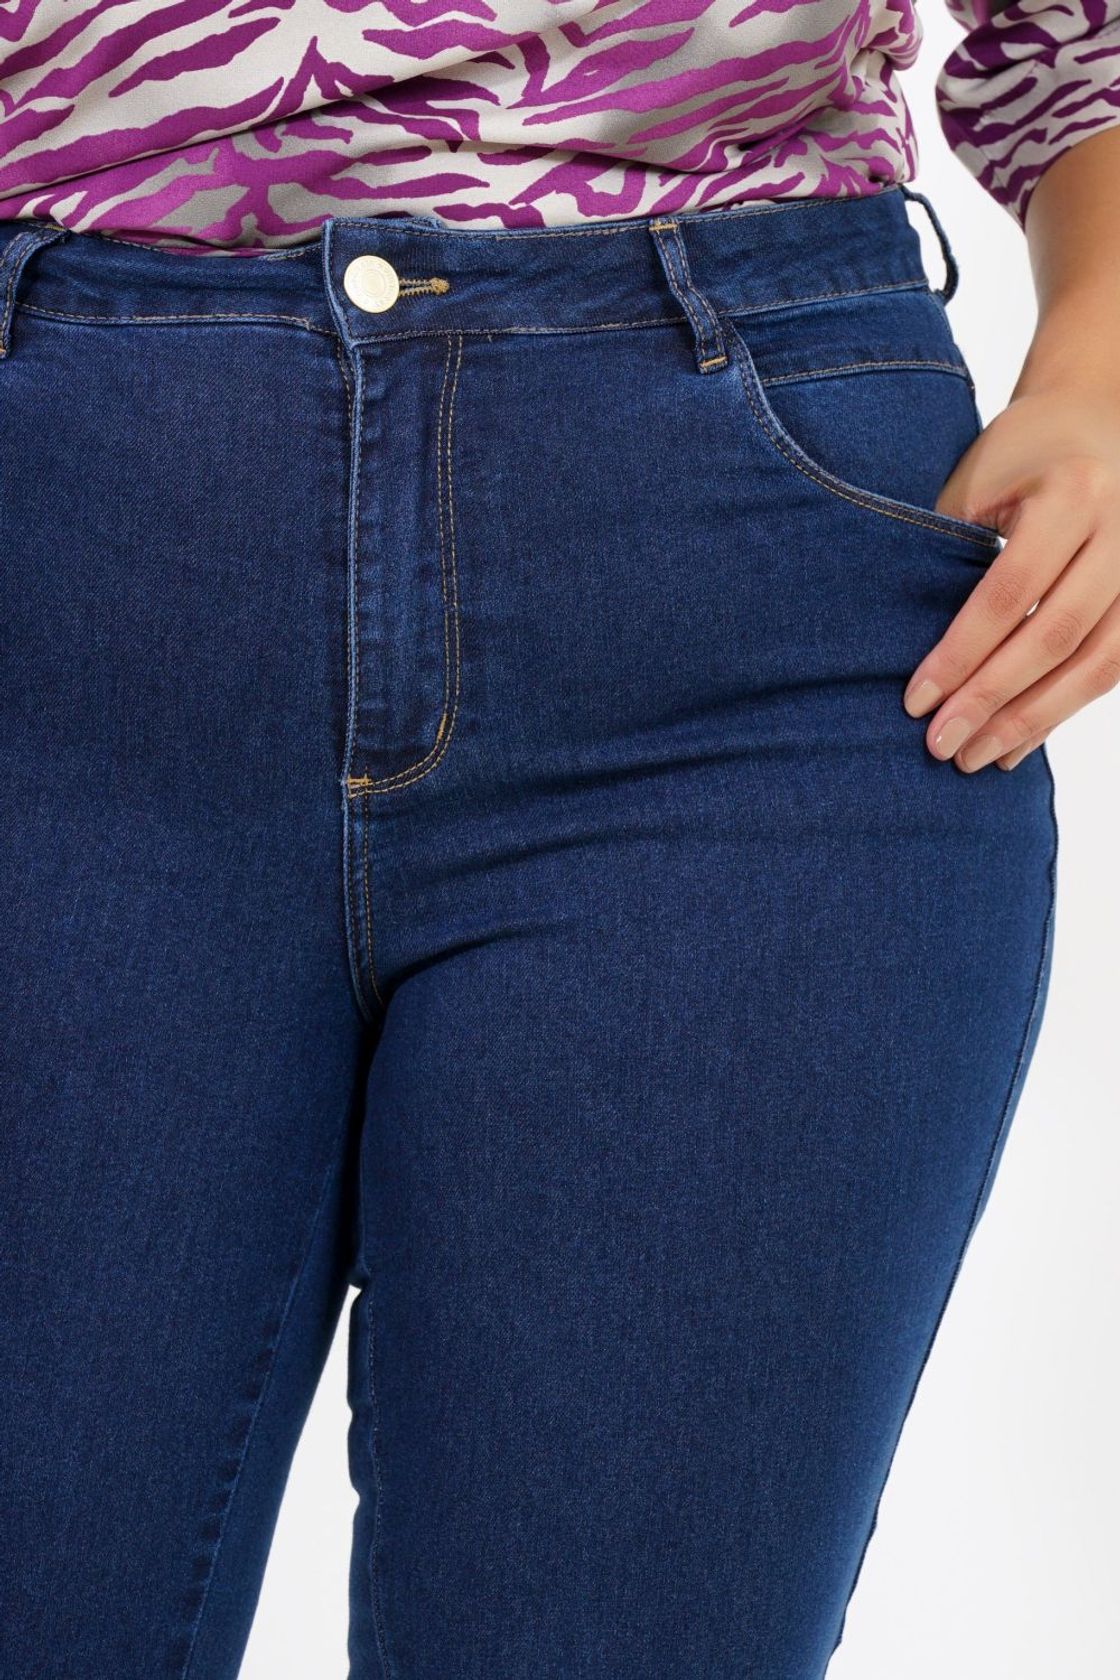 Shorts jeans para mulheres calças shorts jeans bolsos lavagem moda feminina  jeans plus size calças jeans azul shorts, Azul, G